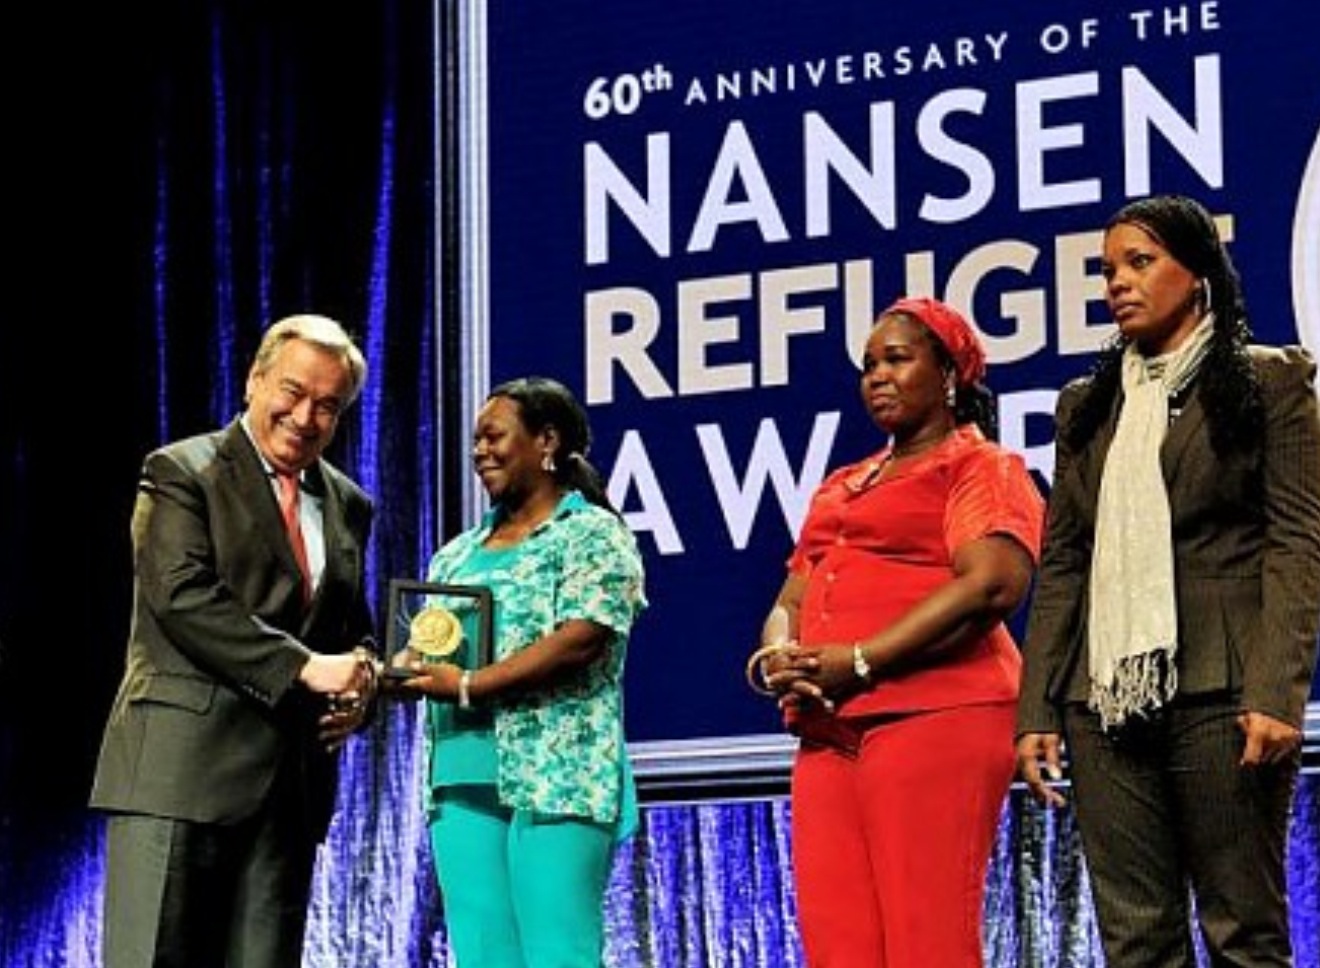 Red de Voluntarias Colombianas gana el premio más prestigioso de los refugiados de Naciones Unidas